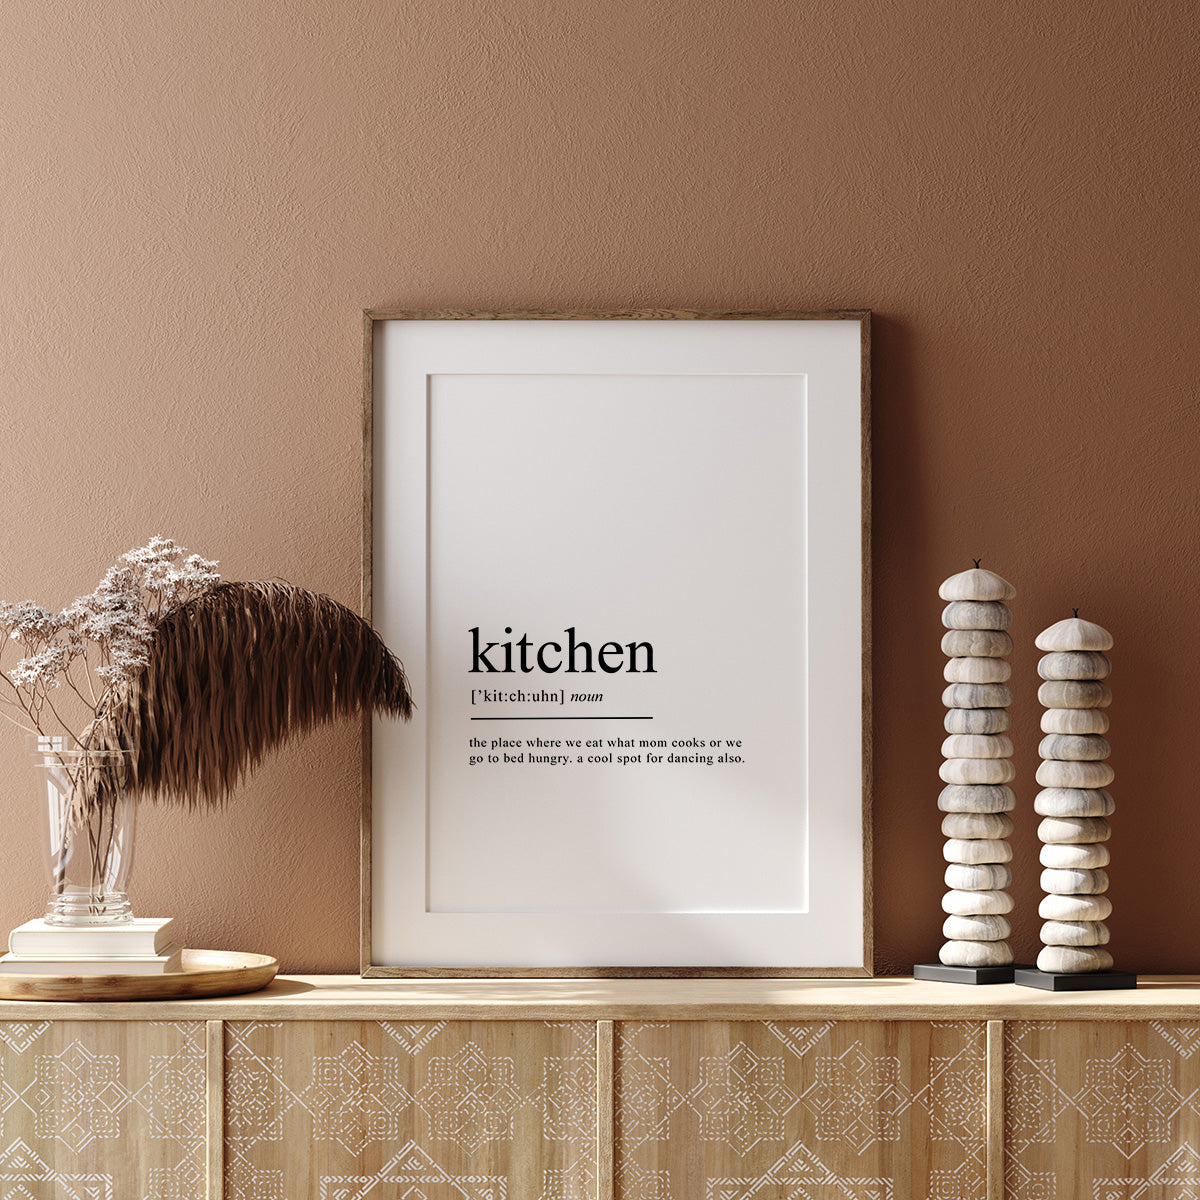 kitchen definition print gift